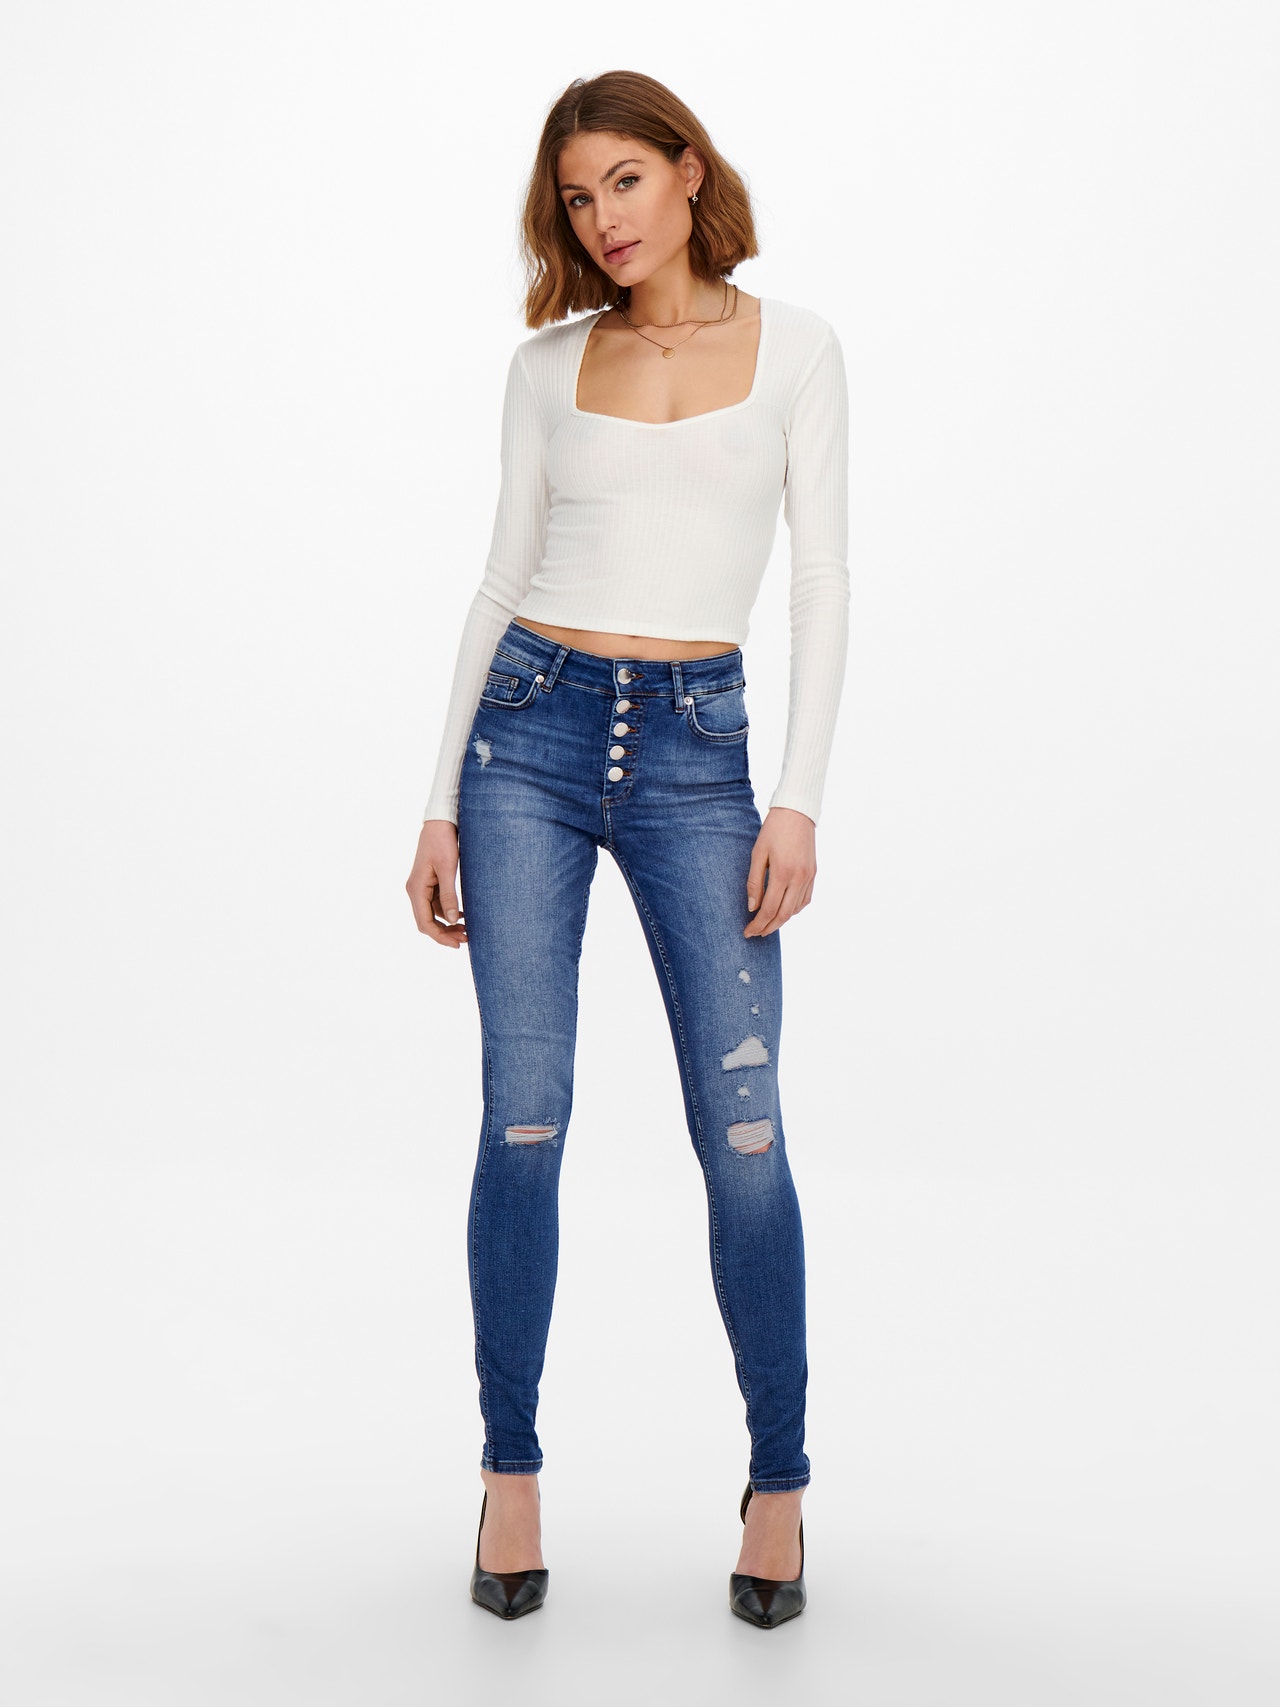 ONLY ONLBobby cintura media roturas Jeans skinny fit -Medium Blue Denim - 15229657